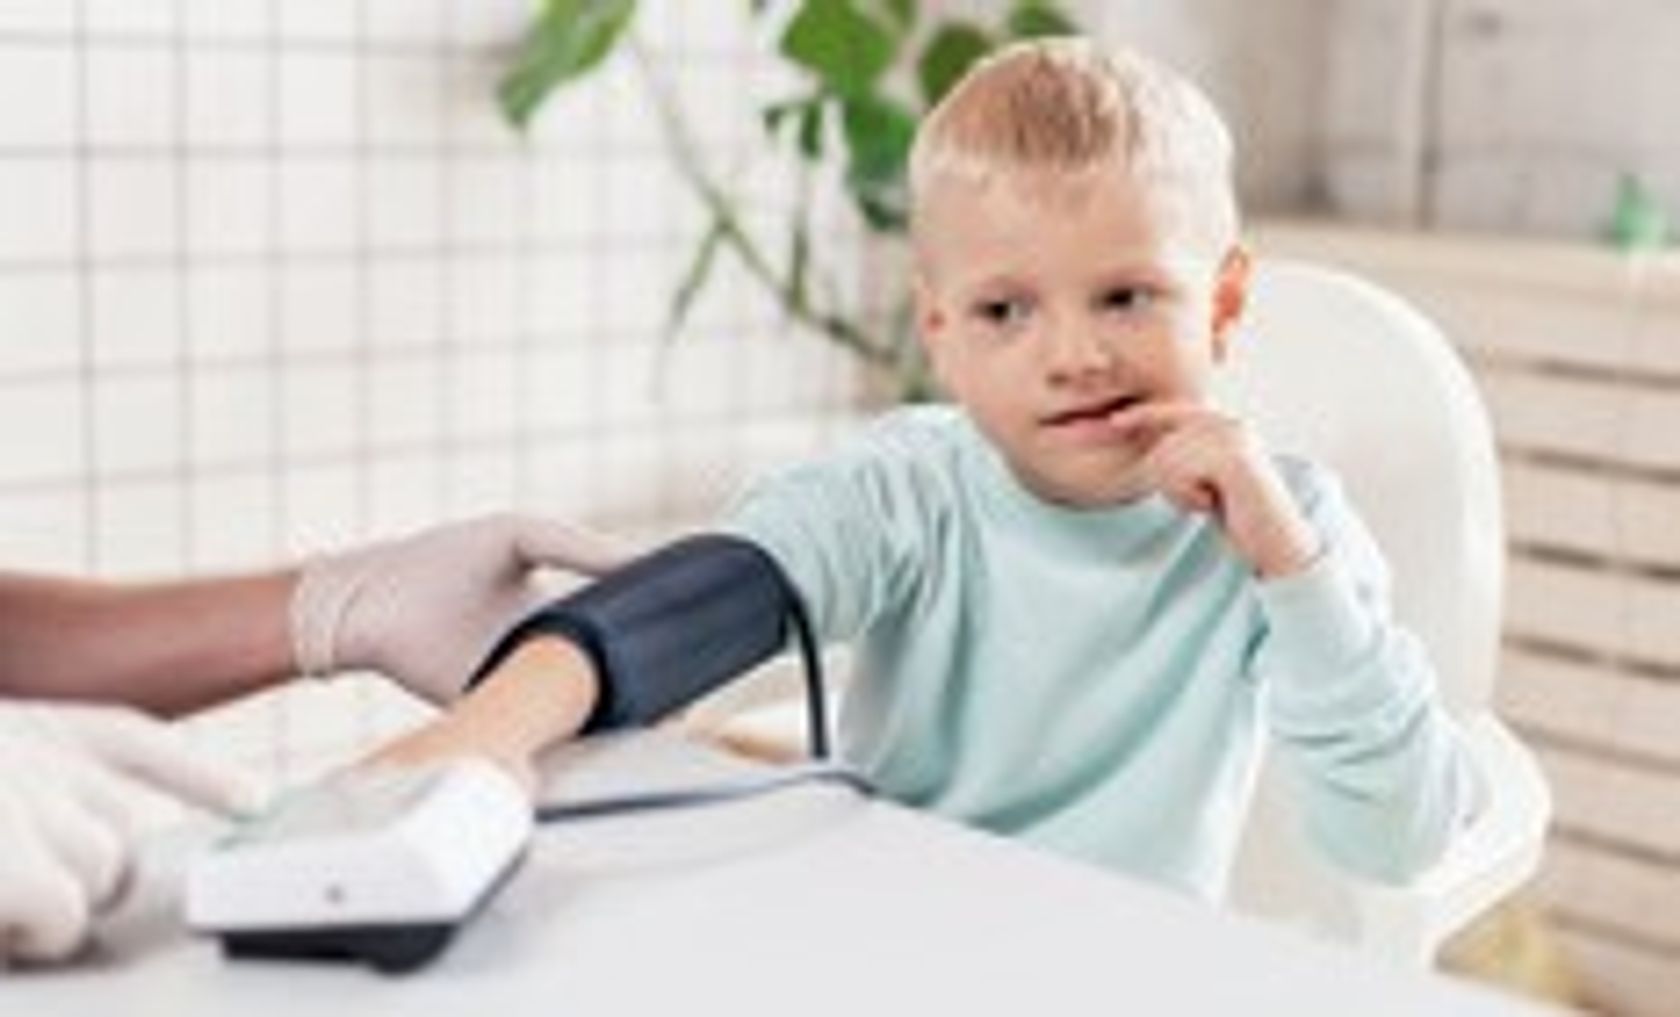 Kind mit angelegter Blutdruckmess-Manschette sitzt am Tisch.